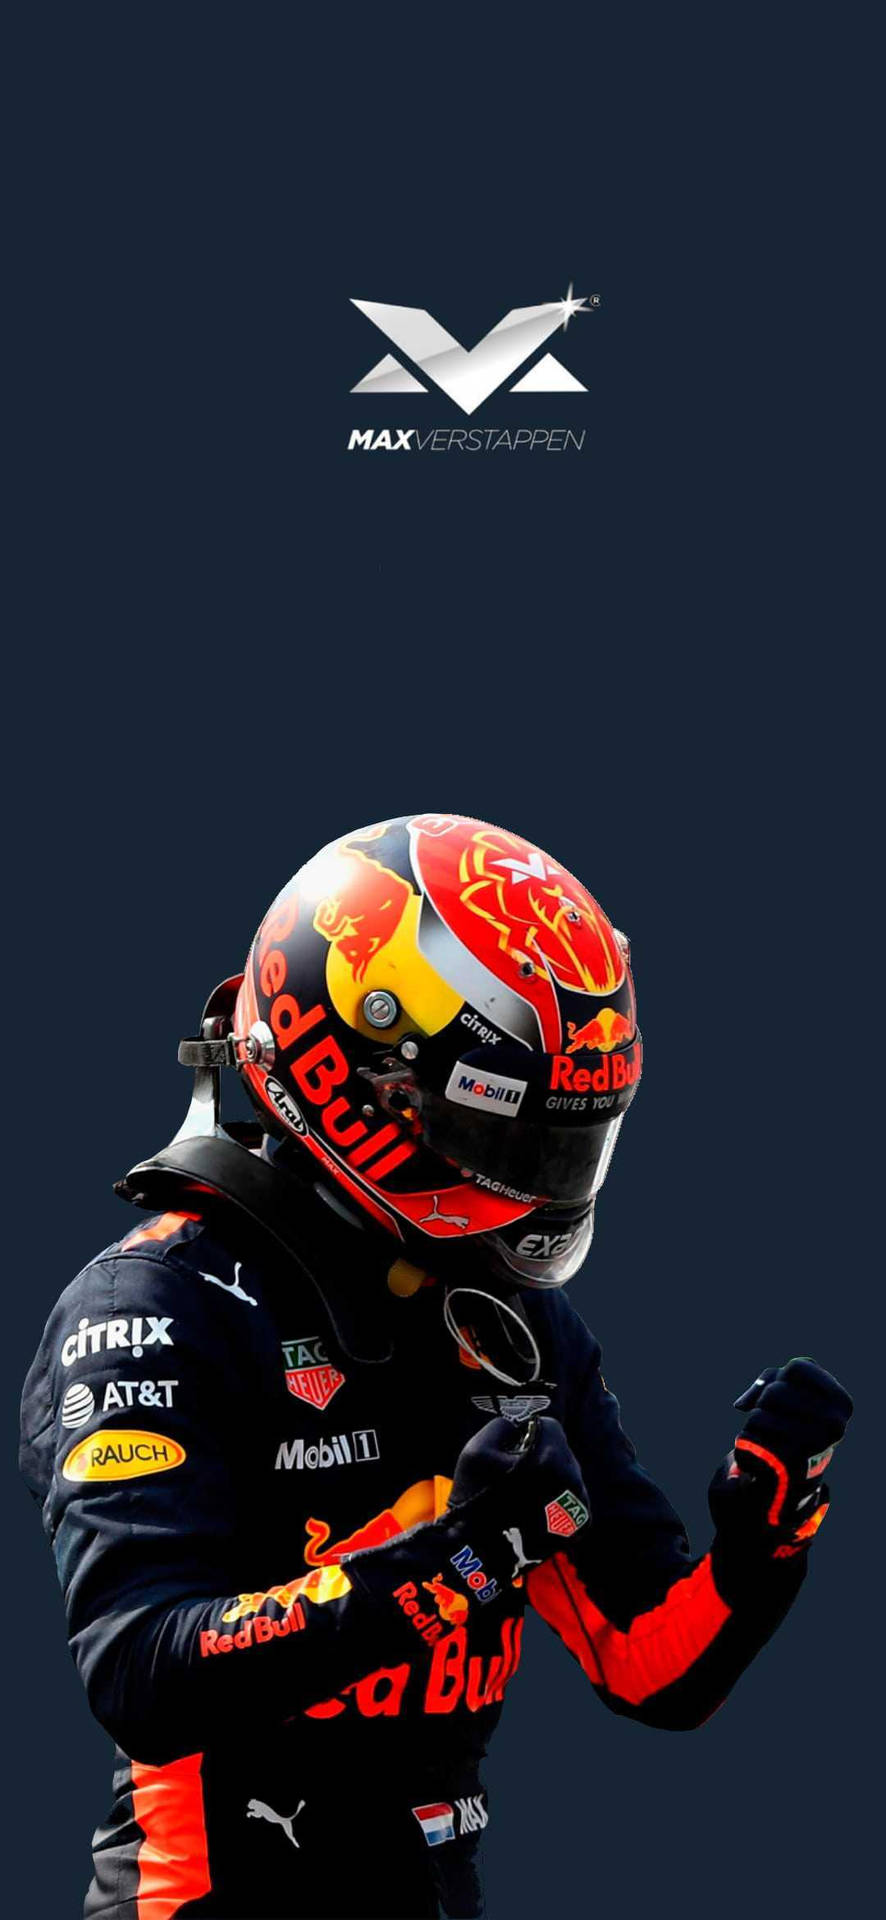 Max Verstappen in his Red Bull Racing Suit Wallpaper